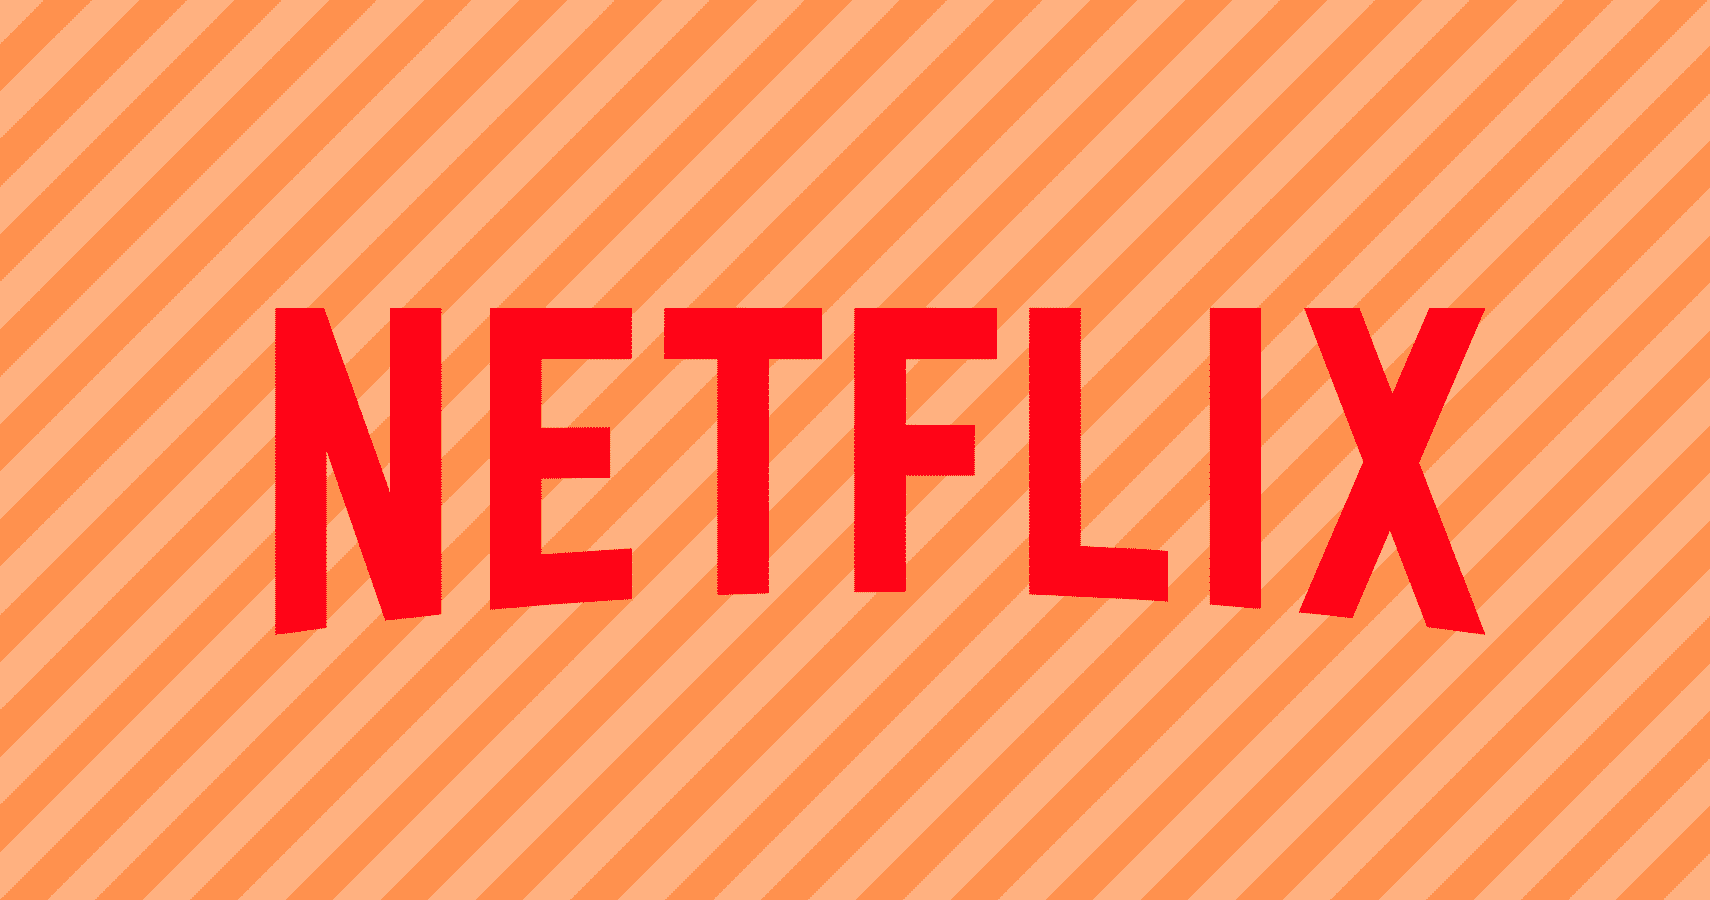 Fãs não aguentam mais! Após cancelar aclamadas séries, Netflix precisa aprender nova lição